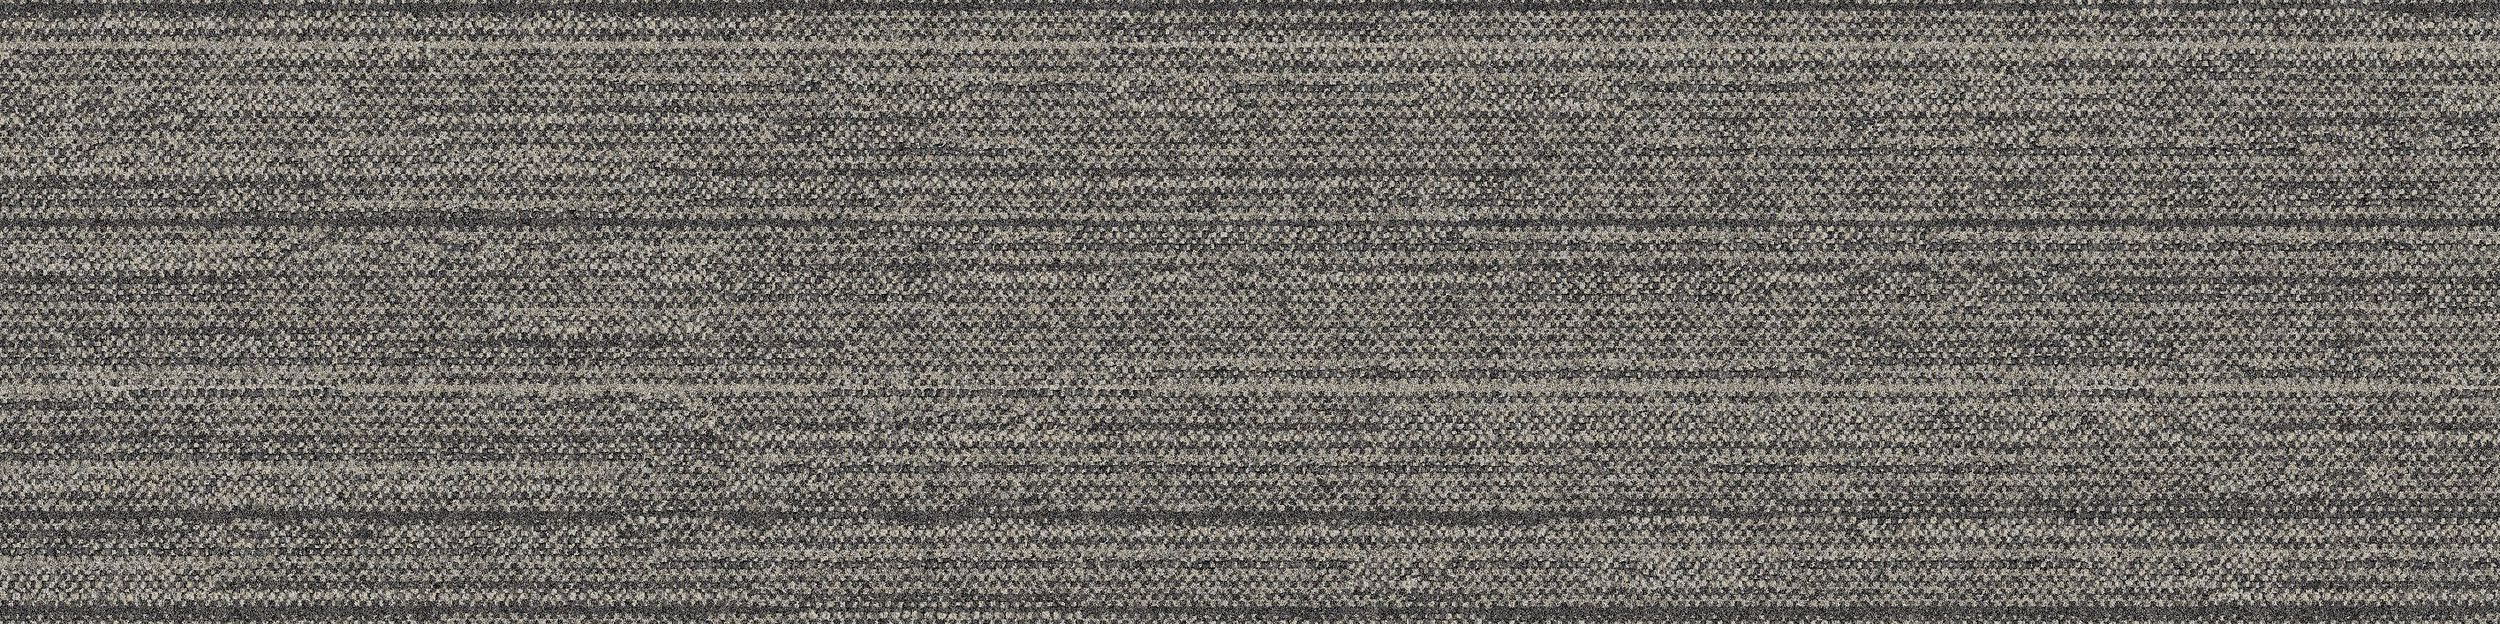 WW880 Carpet Tile In Natural Loom imagen número 2